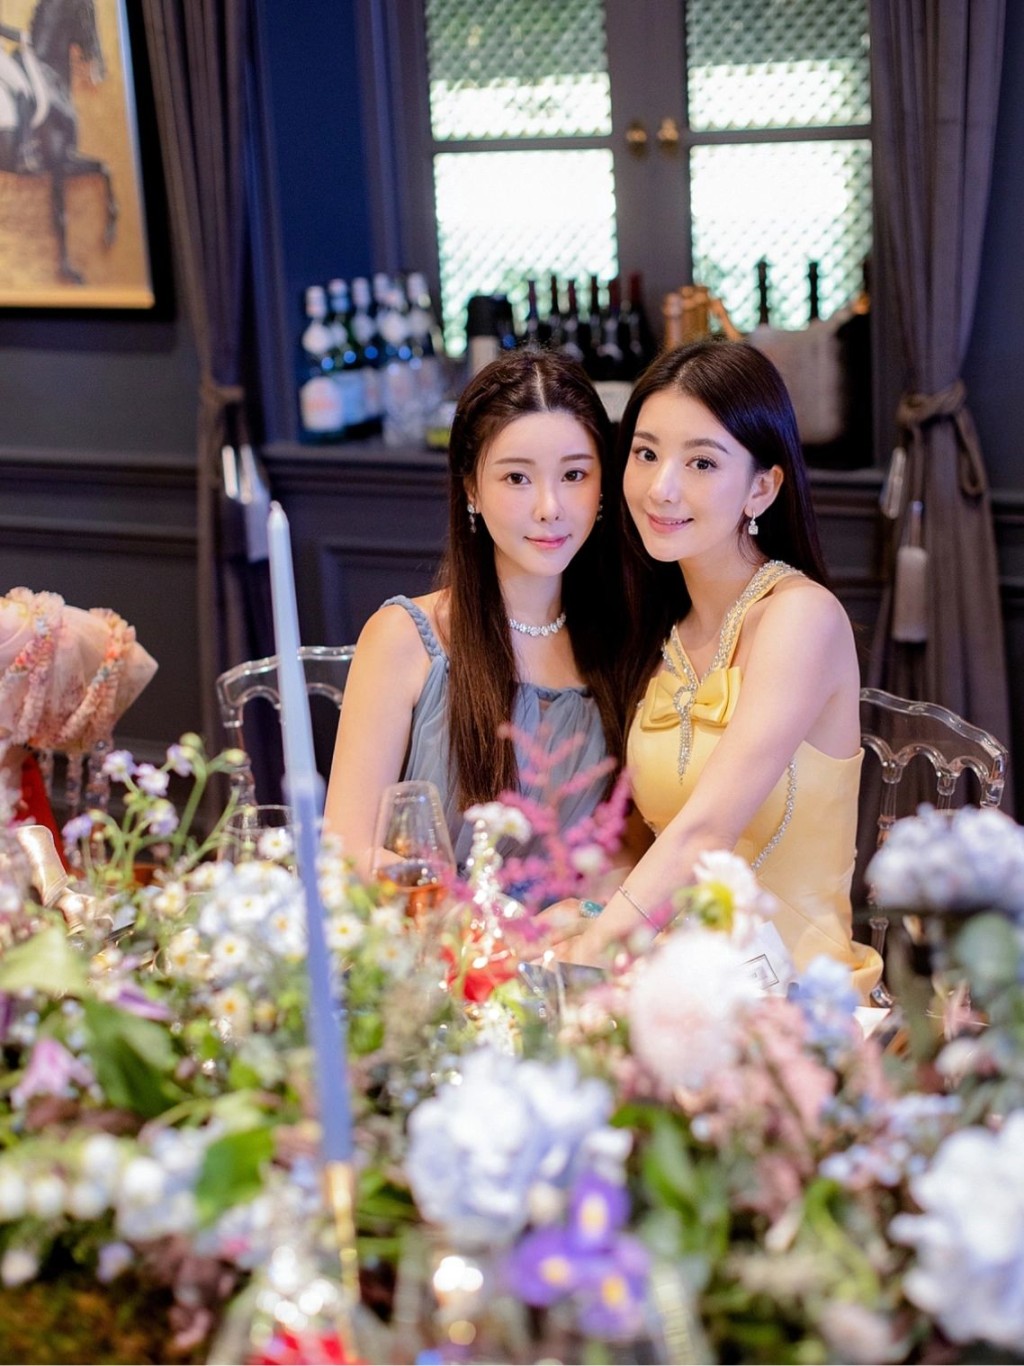 方媛在去年7月，也曾在社交網分享出席蔡天鳳生日會的照片。